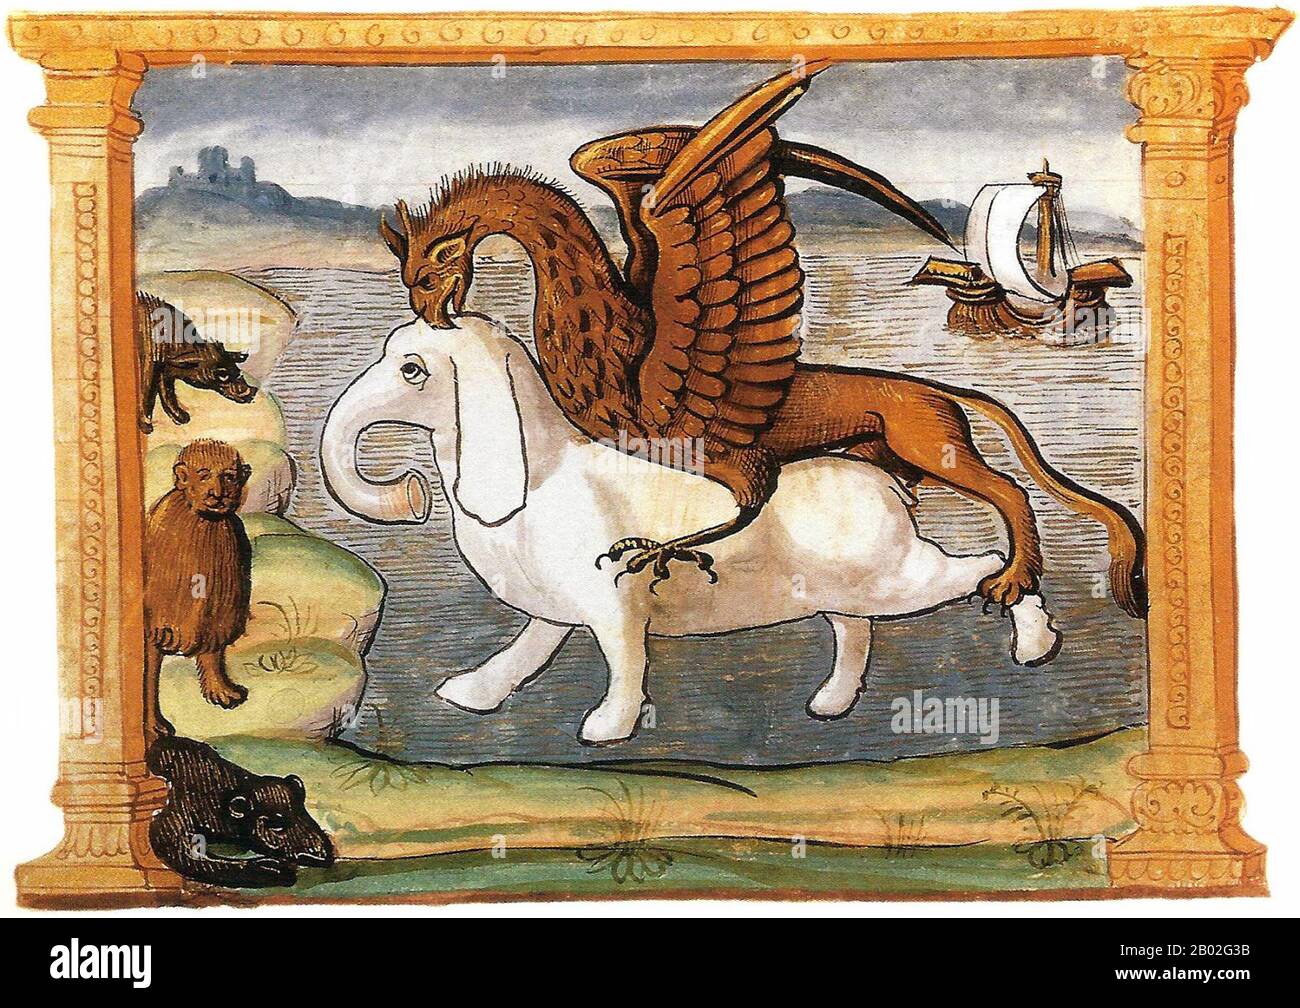 Der griffin, Greif oder Gryphon (Griechisch: γρύφων, grýphōn, oder γρύπων, grýpōn, Latein: Gryphus) ist ein legendäres Wesen mit Körper, Schwanz und Hinterbeinen eines Löwen, Kopf und Flügel eines Adlers und einem Adler-Talon als Vorderfüße. Weil der Löwe traditionell als König der Bestien und der Adler als König der Vögel galt, wurde der griffin als besonders mächtiges und majestätisches Wesen angesehen. Der griffin wurde auch als König aller Kreaturen gedacht. Marco Polo wurde vermutlich um 1254 v. Chr. in Venedig geboren und wurde von seiner Tante und seinem Onkel großgezogen, nachdem seine Mutter gestorben war. Sein Vater Niccolo, Stockfoto